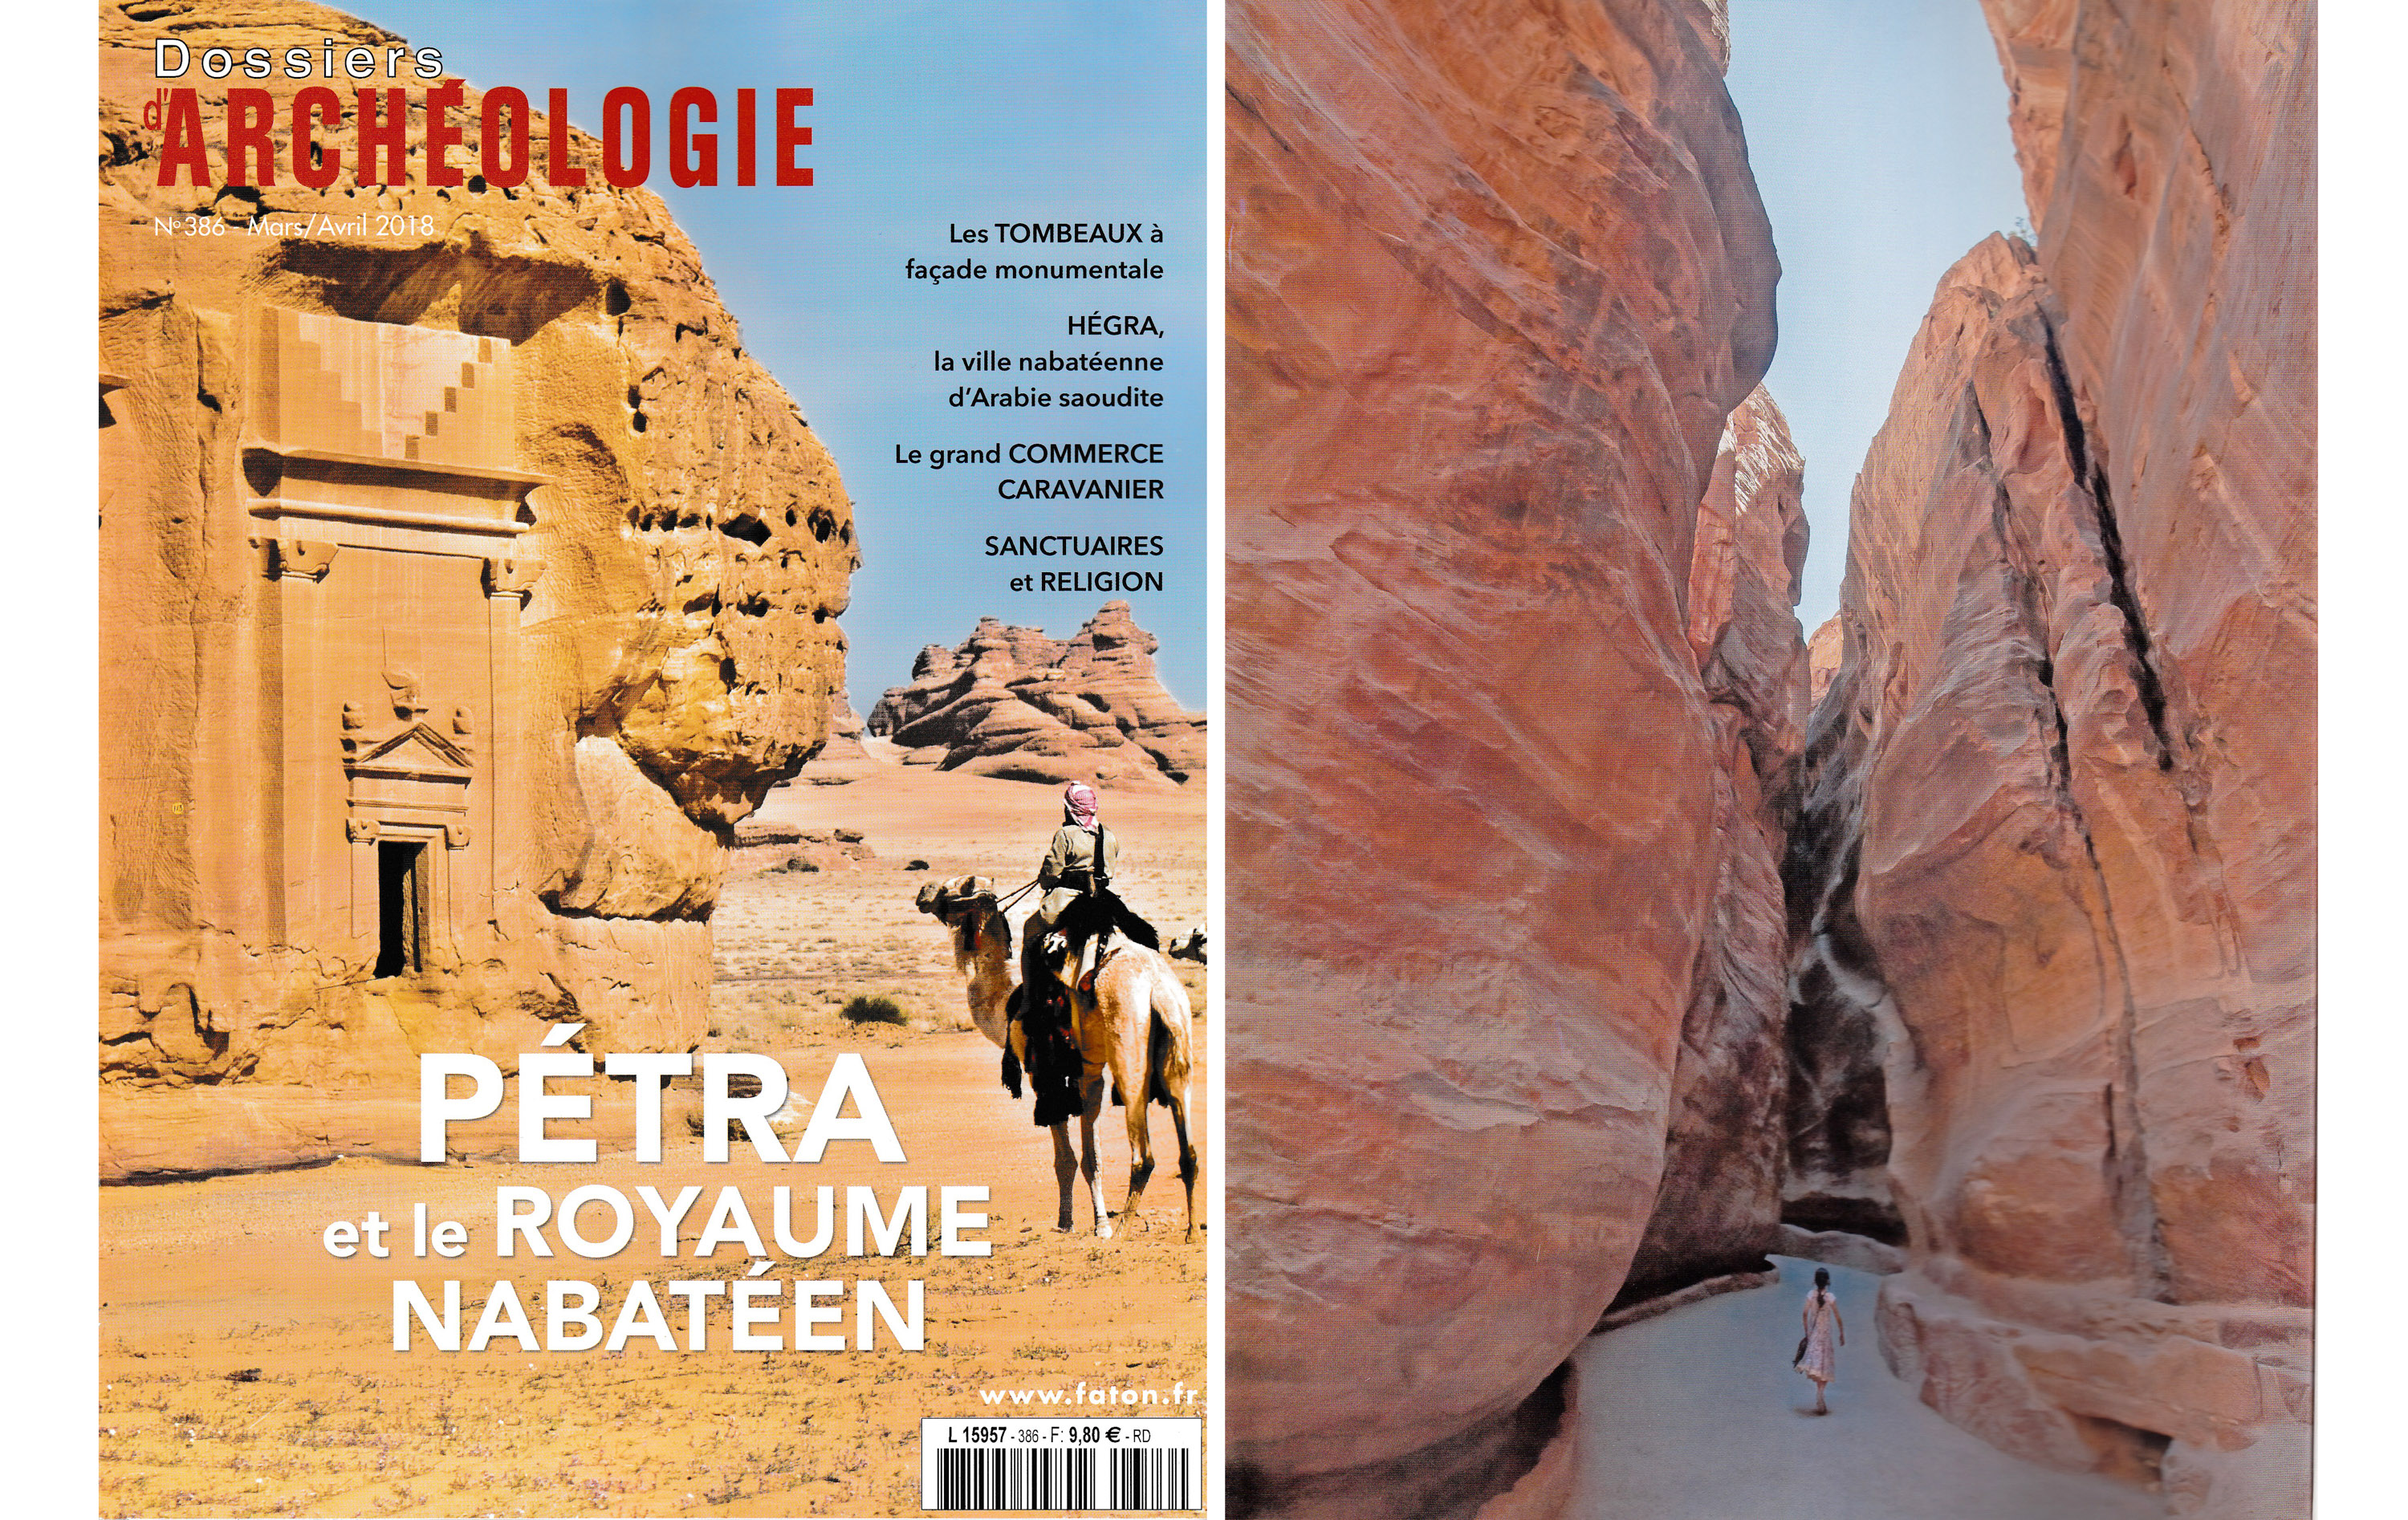 Parution dans Dossiers Archéologie de photographies réalisées à Hegra et à Petra